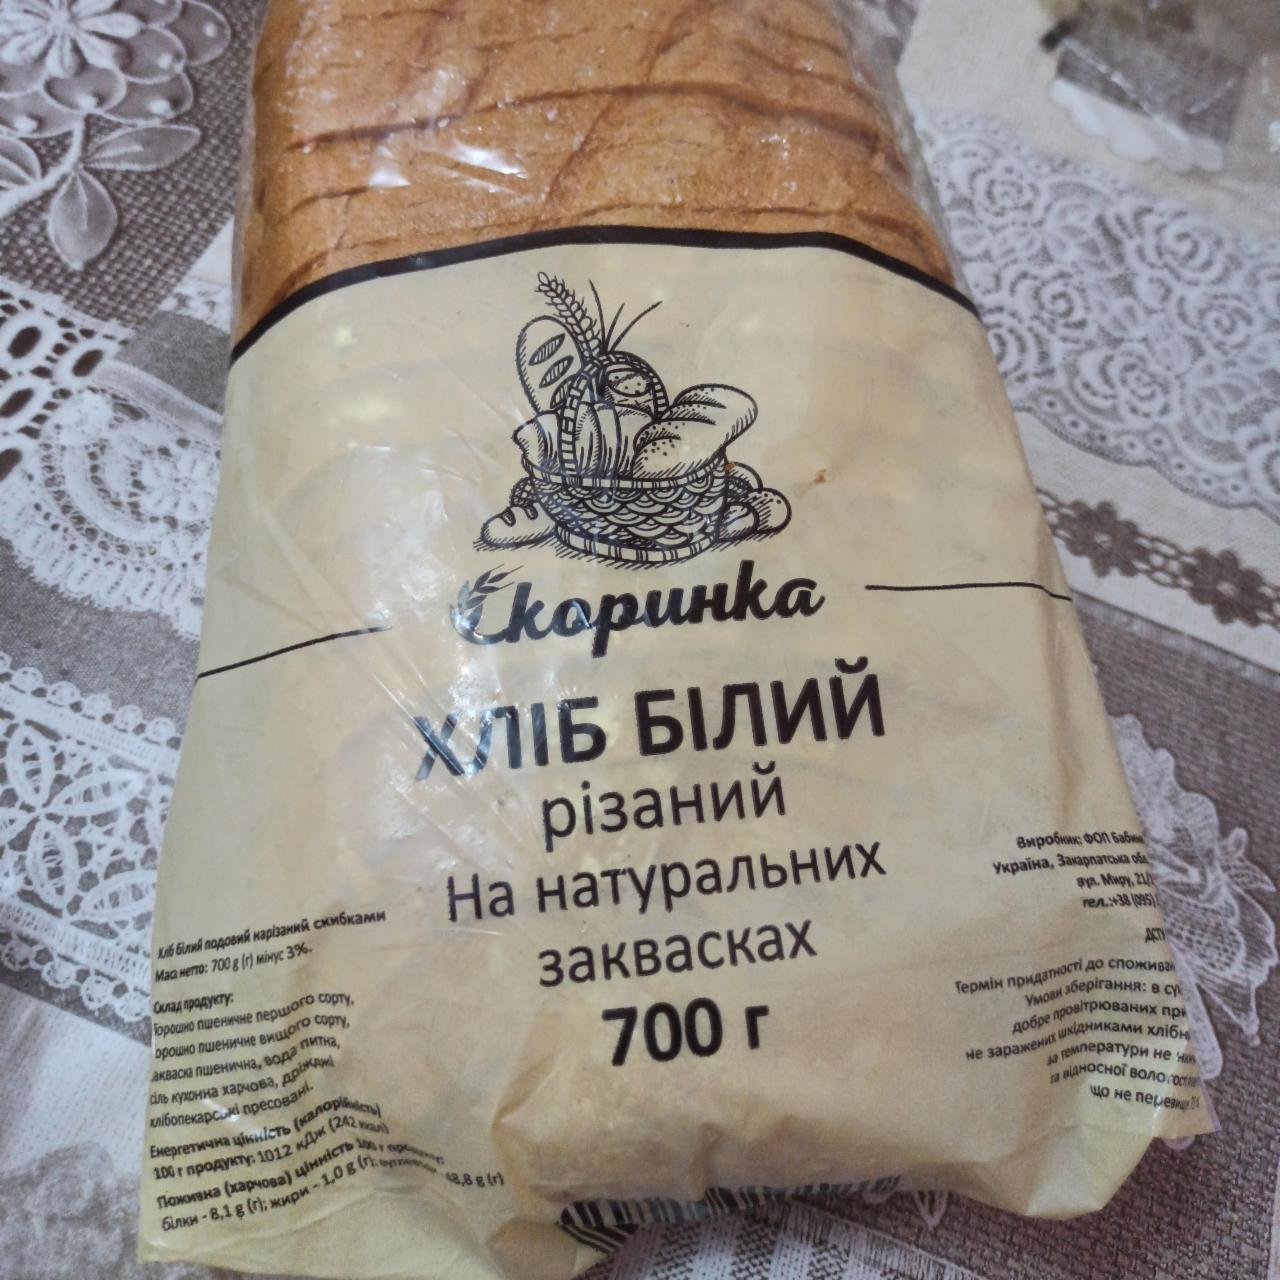 Фото - Хлеб белый резаный Скоринка